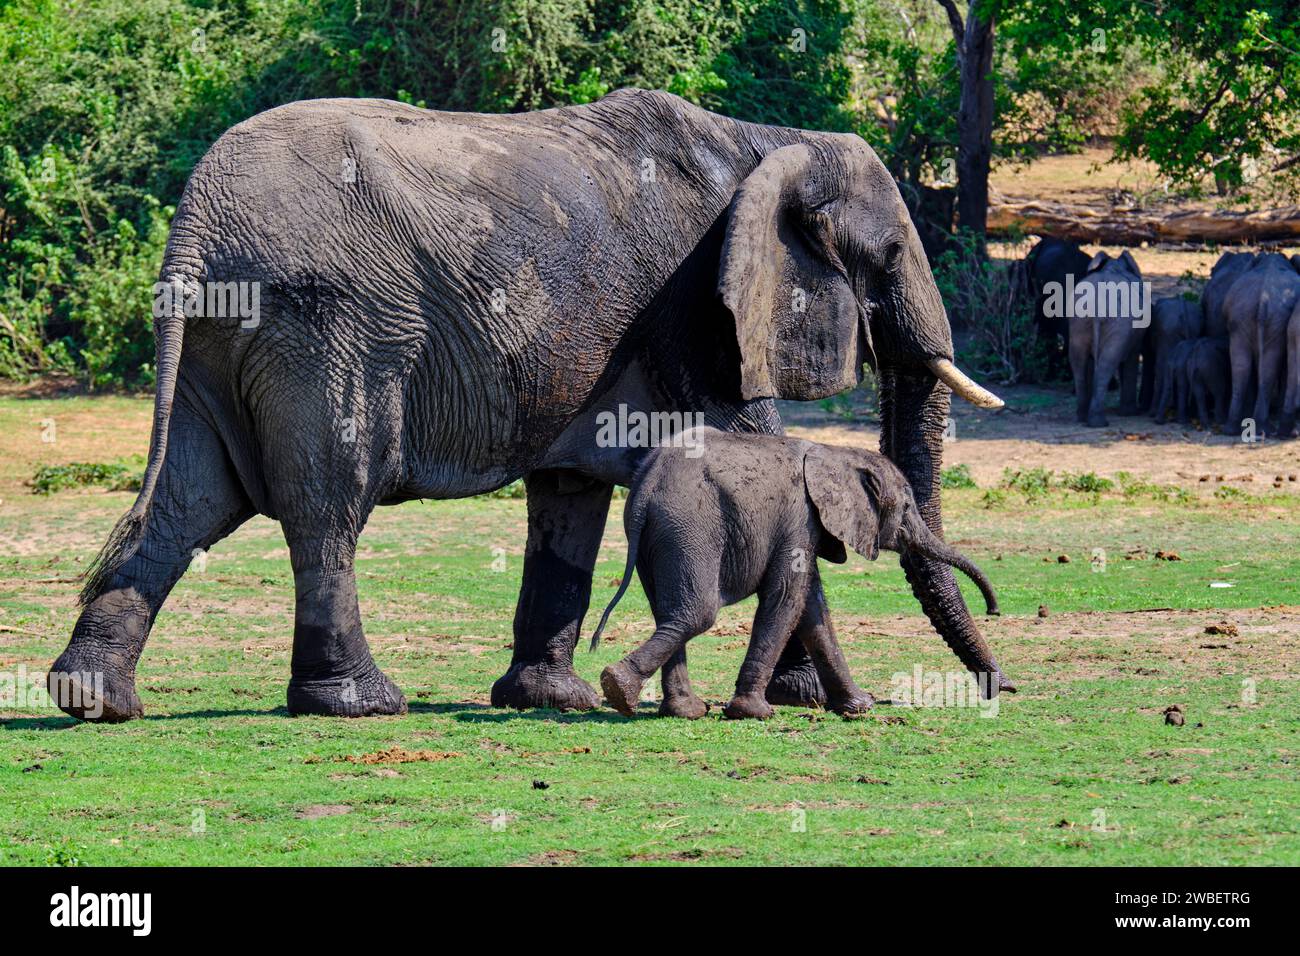 Botswana, District du Nord-Ouest, Parc National de Chobe, éléphants sauvages d'Afrique (Loxodonta africana) avec bébé éléphant Banque D'Images